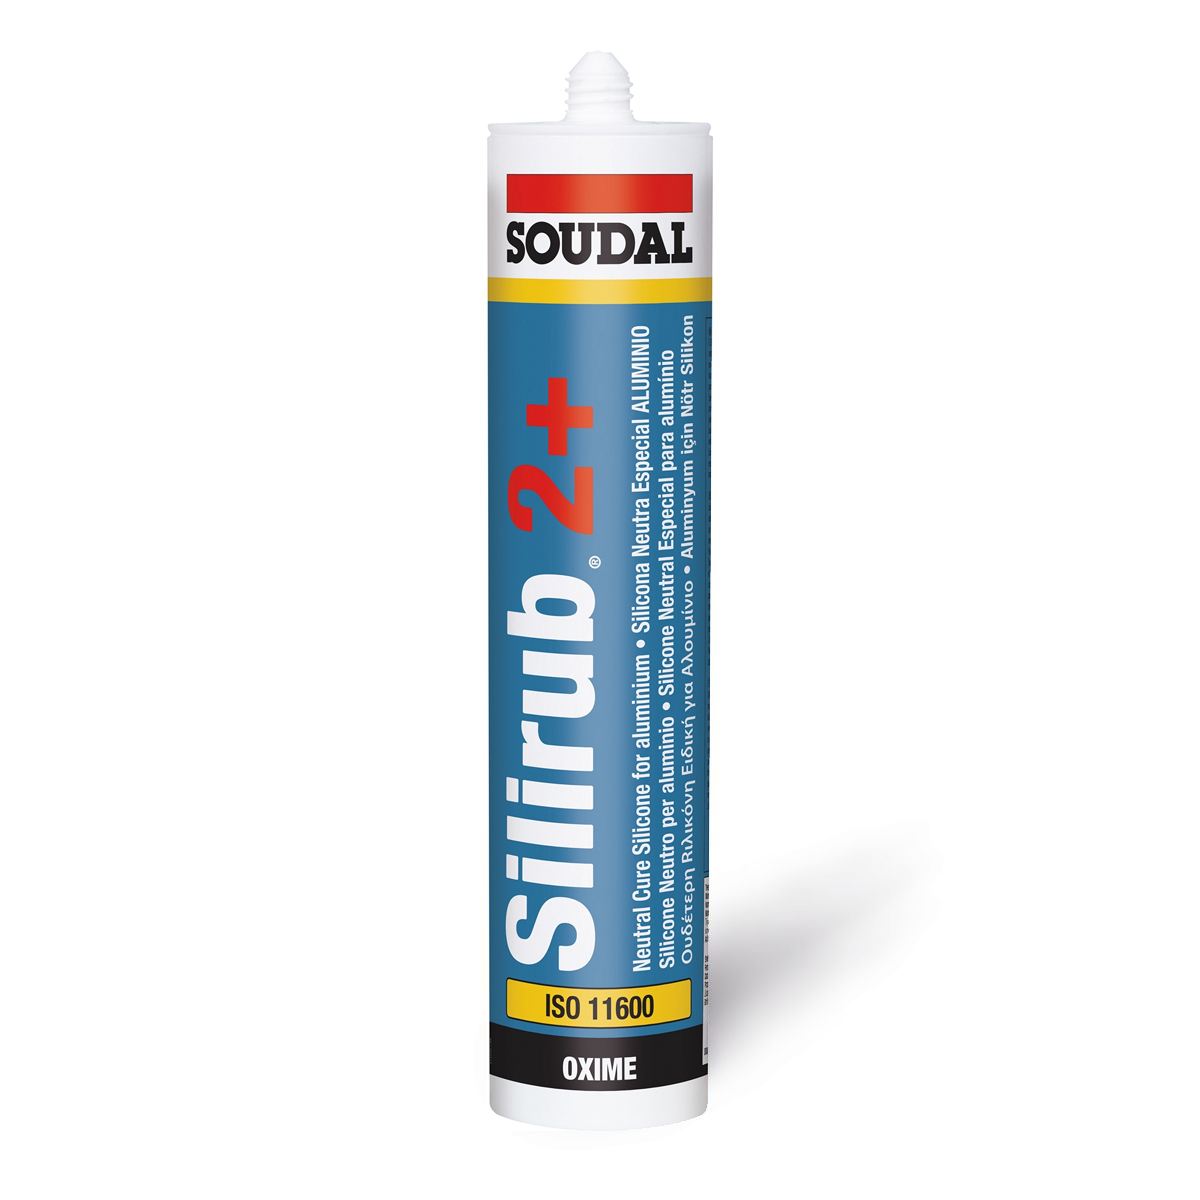 Silicona altas prestaciones (Neutra) SILIRUB 2+ de la marca SOUDAL